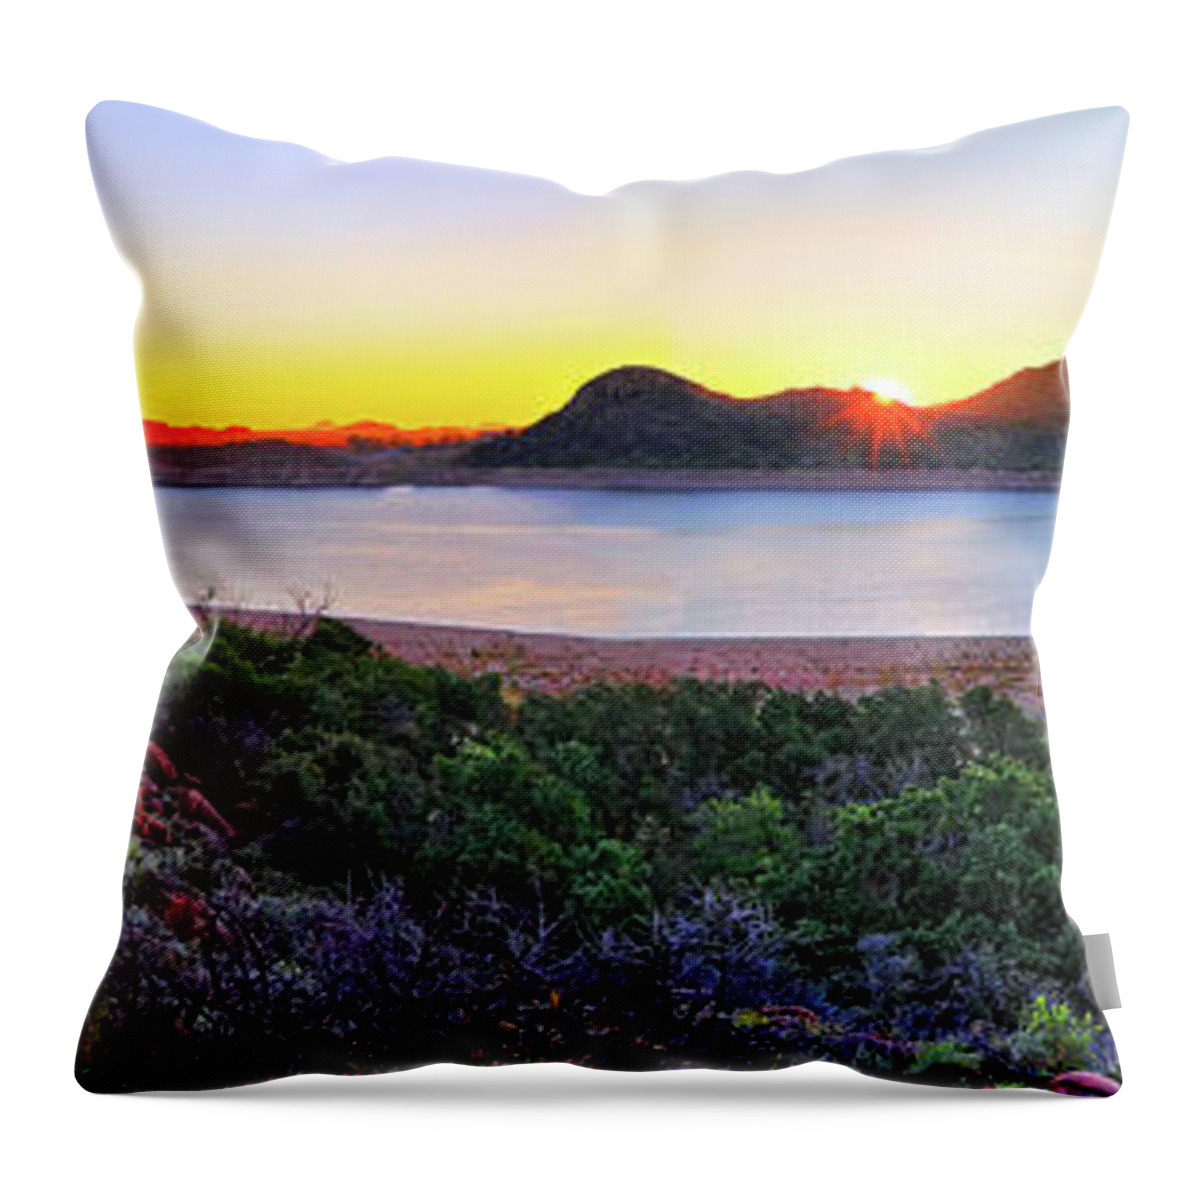 Quartz Mountains Throw Pillow featuring the photograph Quartz Mountains and Lake Altus Panorama - Oklahoma by Jason Politte